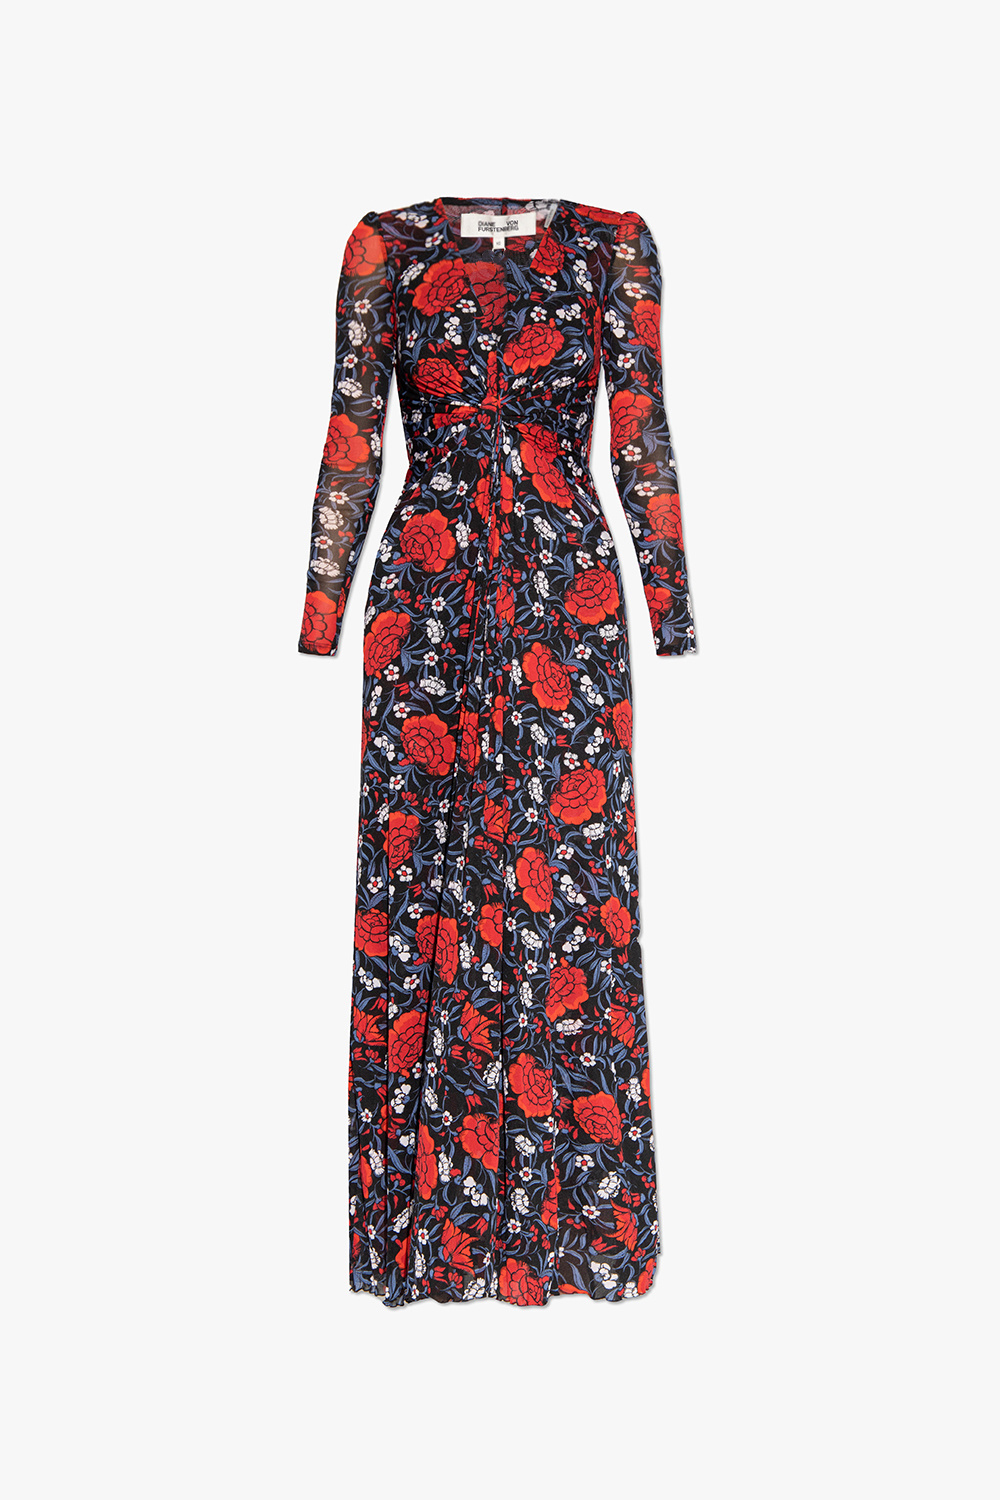 Diane Von Furstenberg ‘Adara’ dress with floral motif